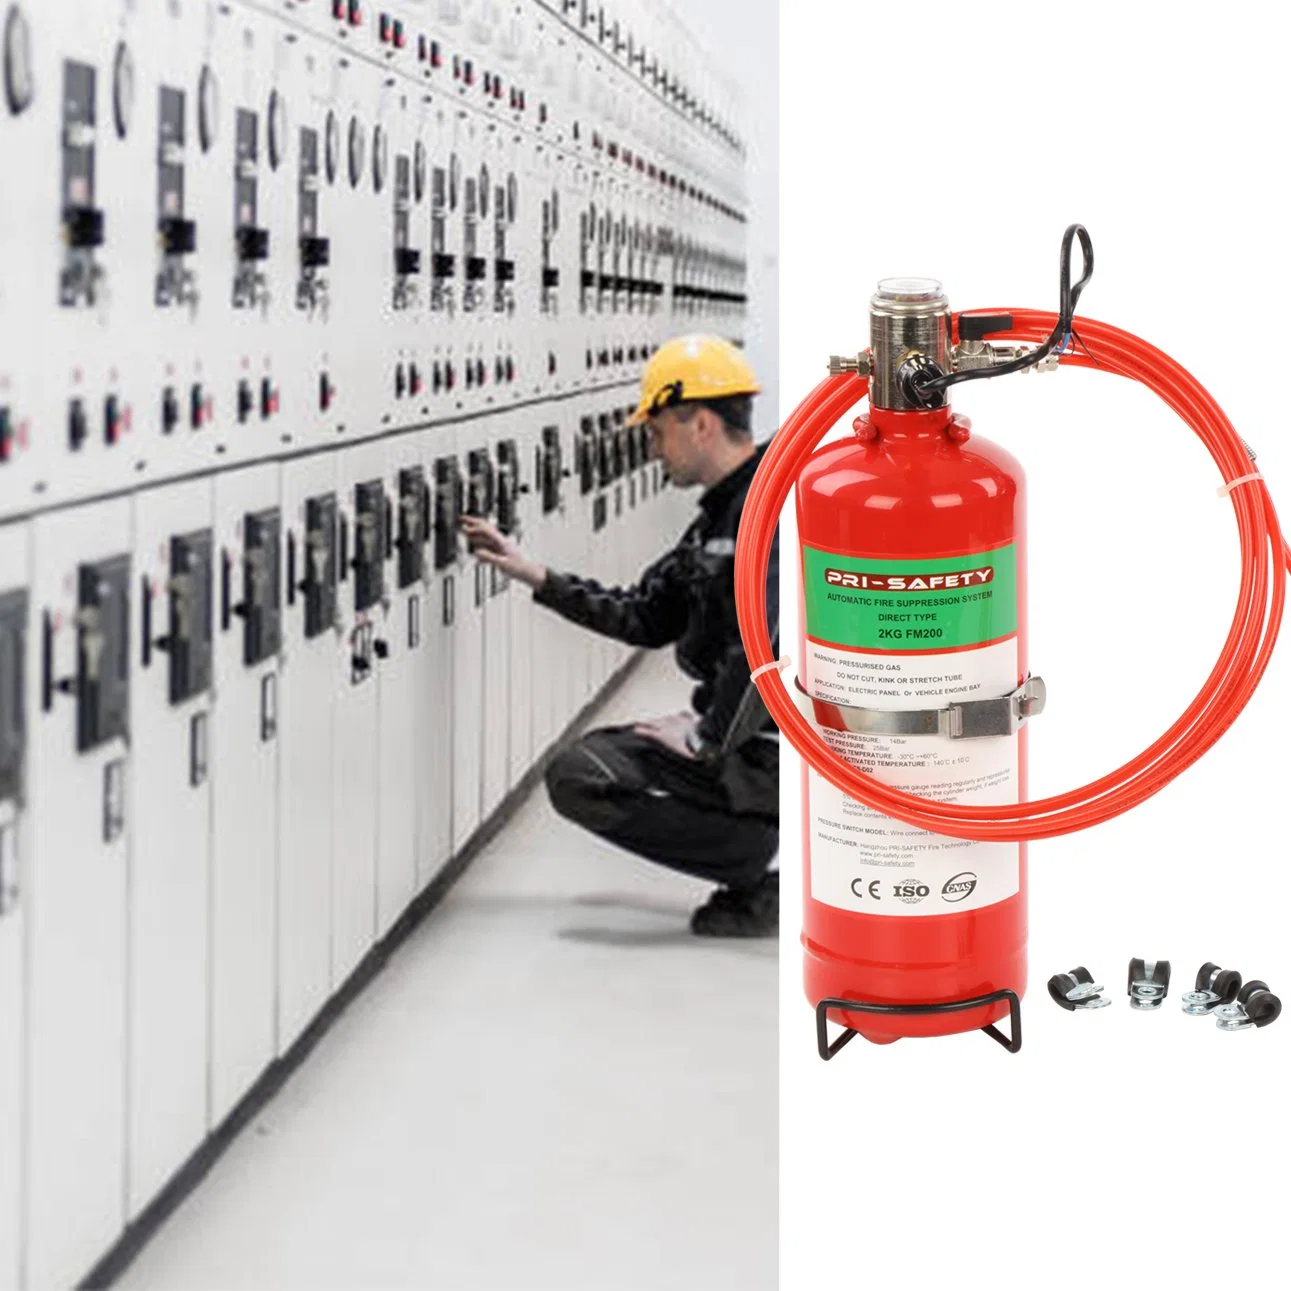 Painel de controle elétrico de FM200 Sistema de Proteção automática contra incêndio